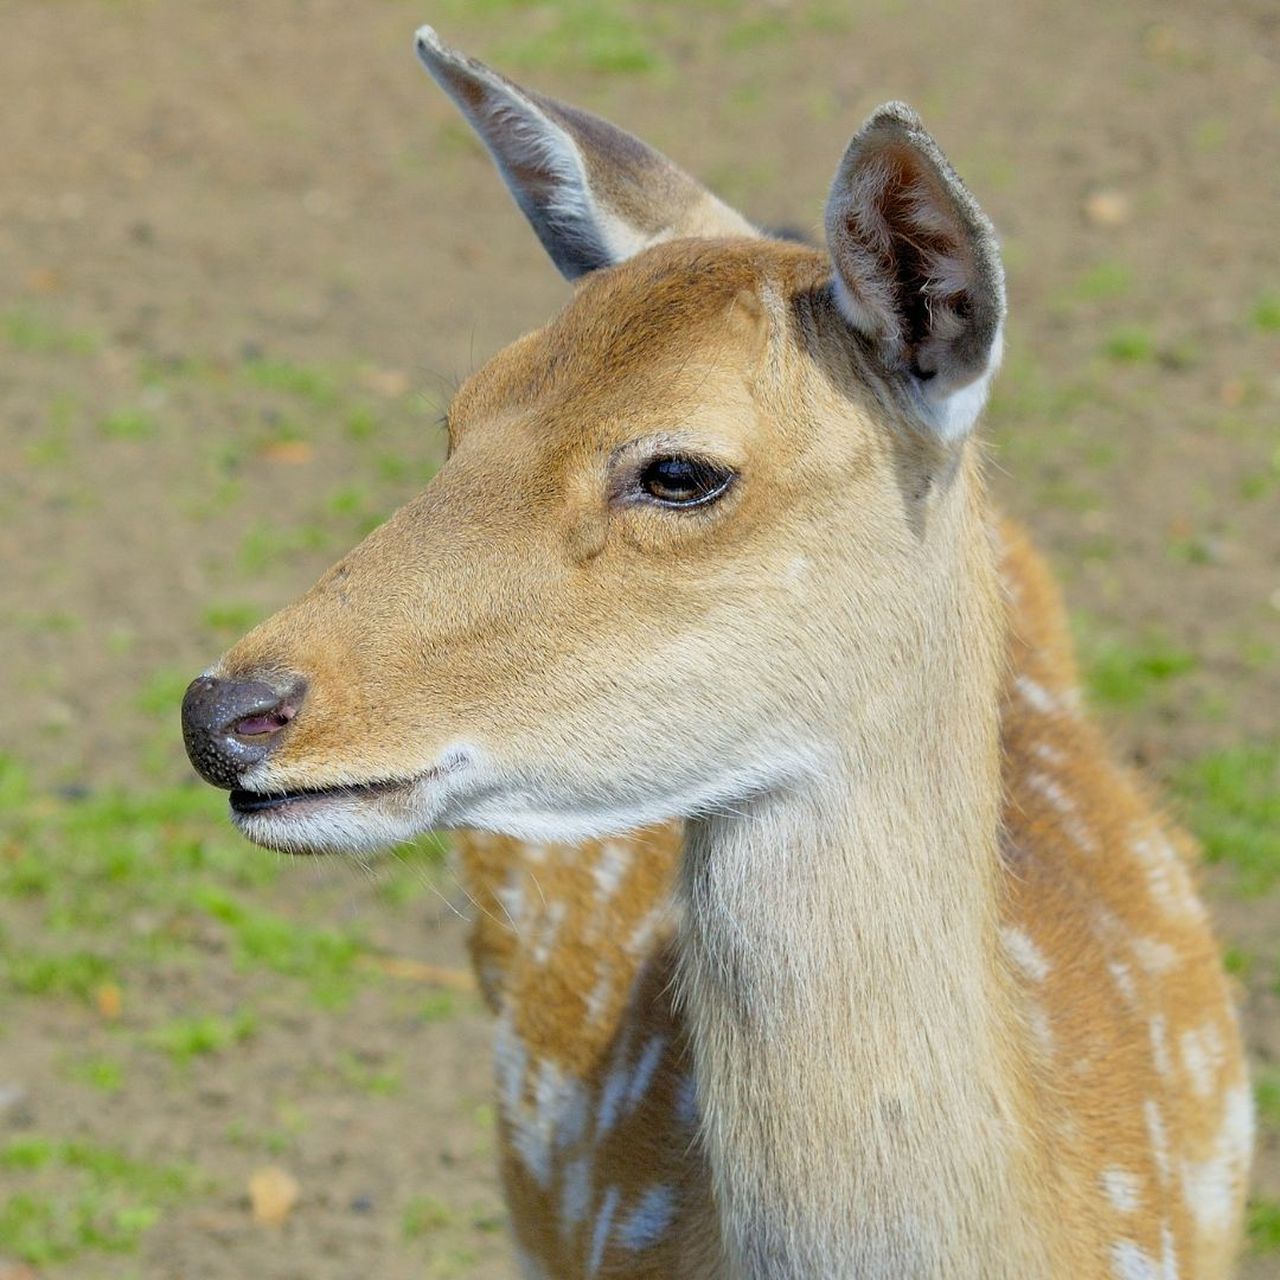 中国鹿科动物大全图片